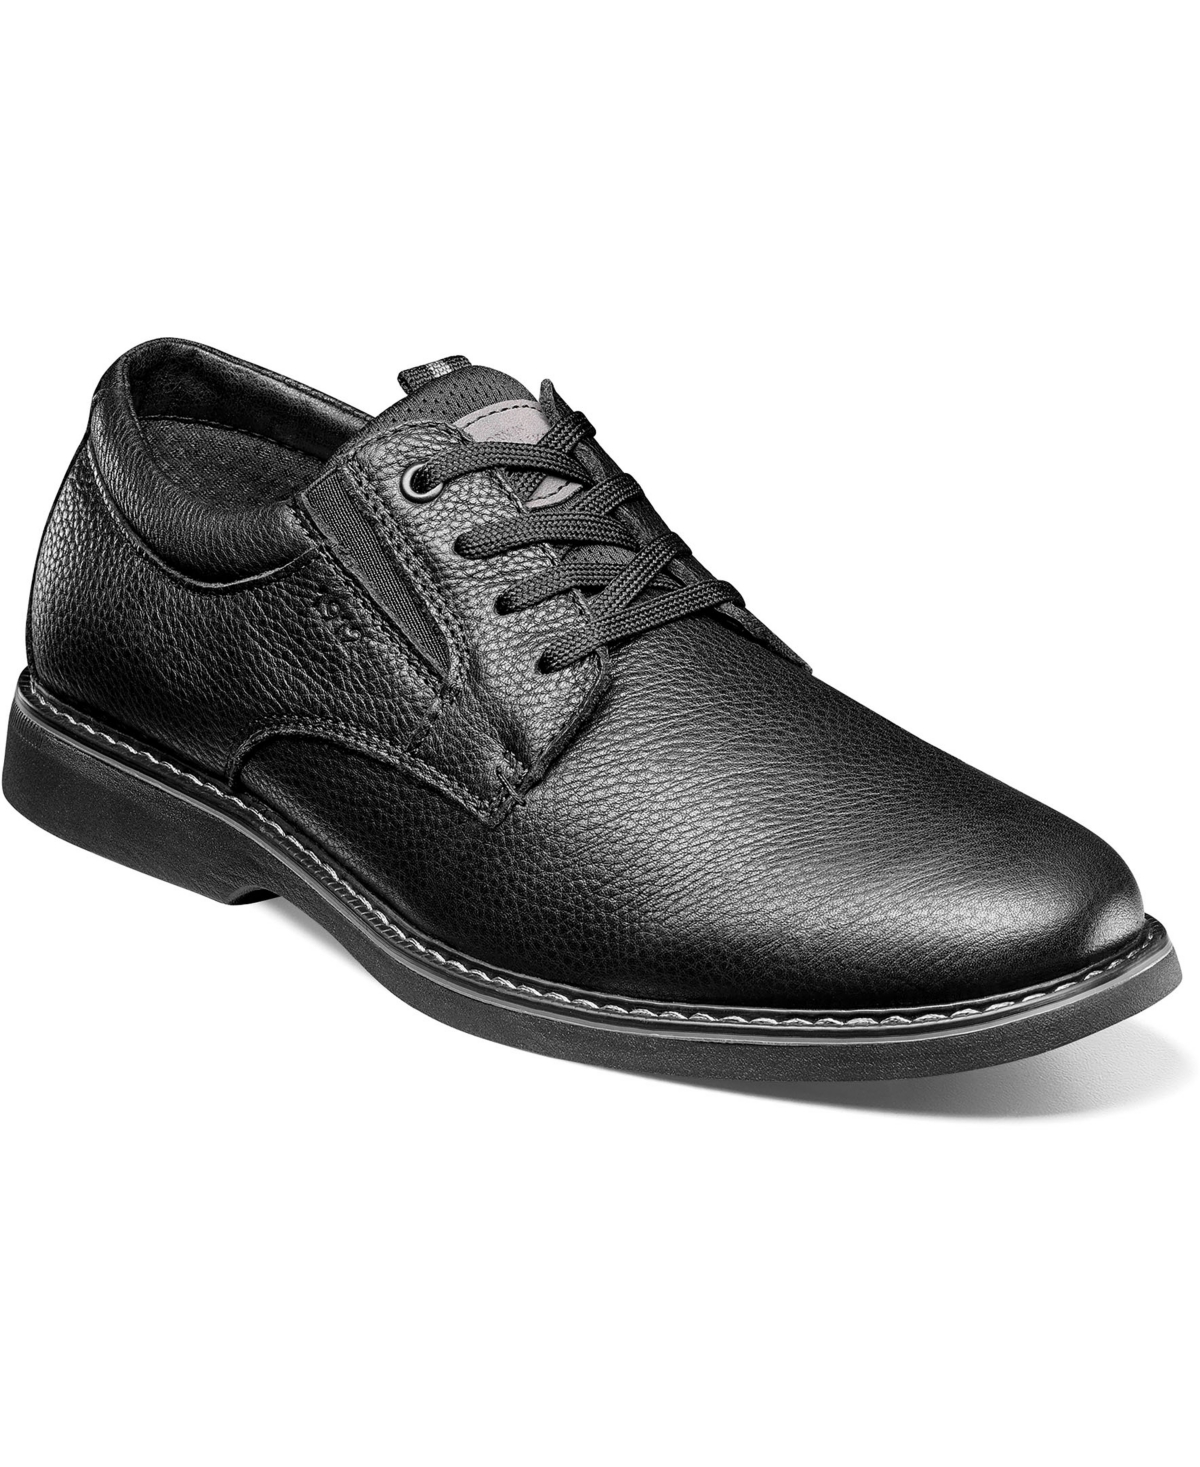 Men's Otto Plain Toe Oxford Shoes - Black Tumble